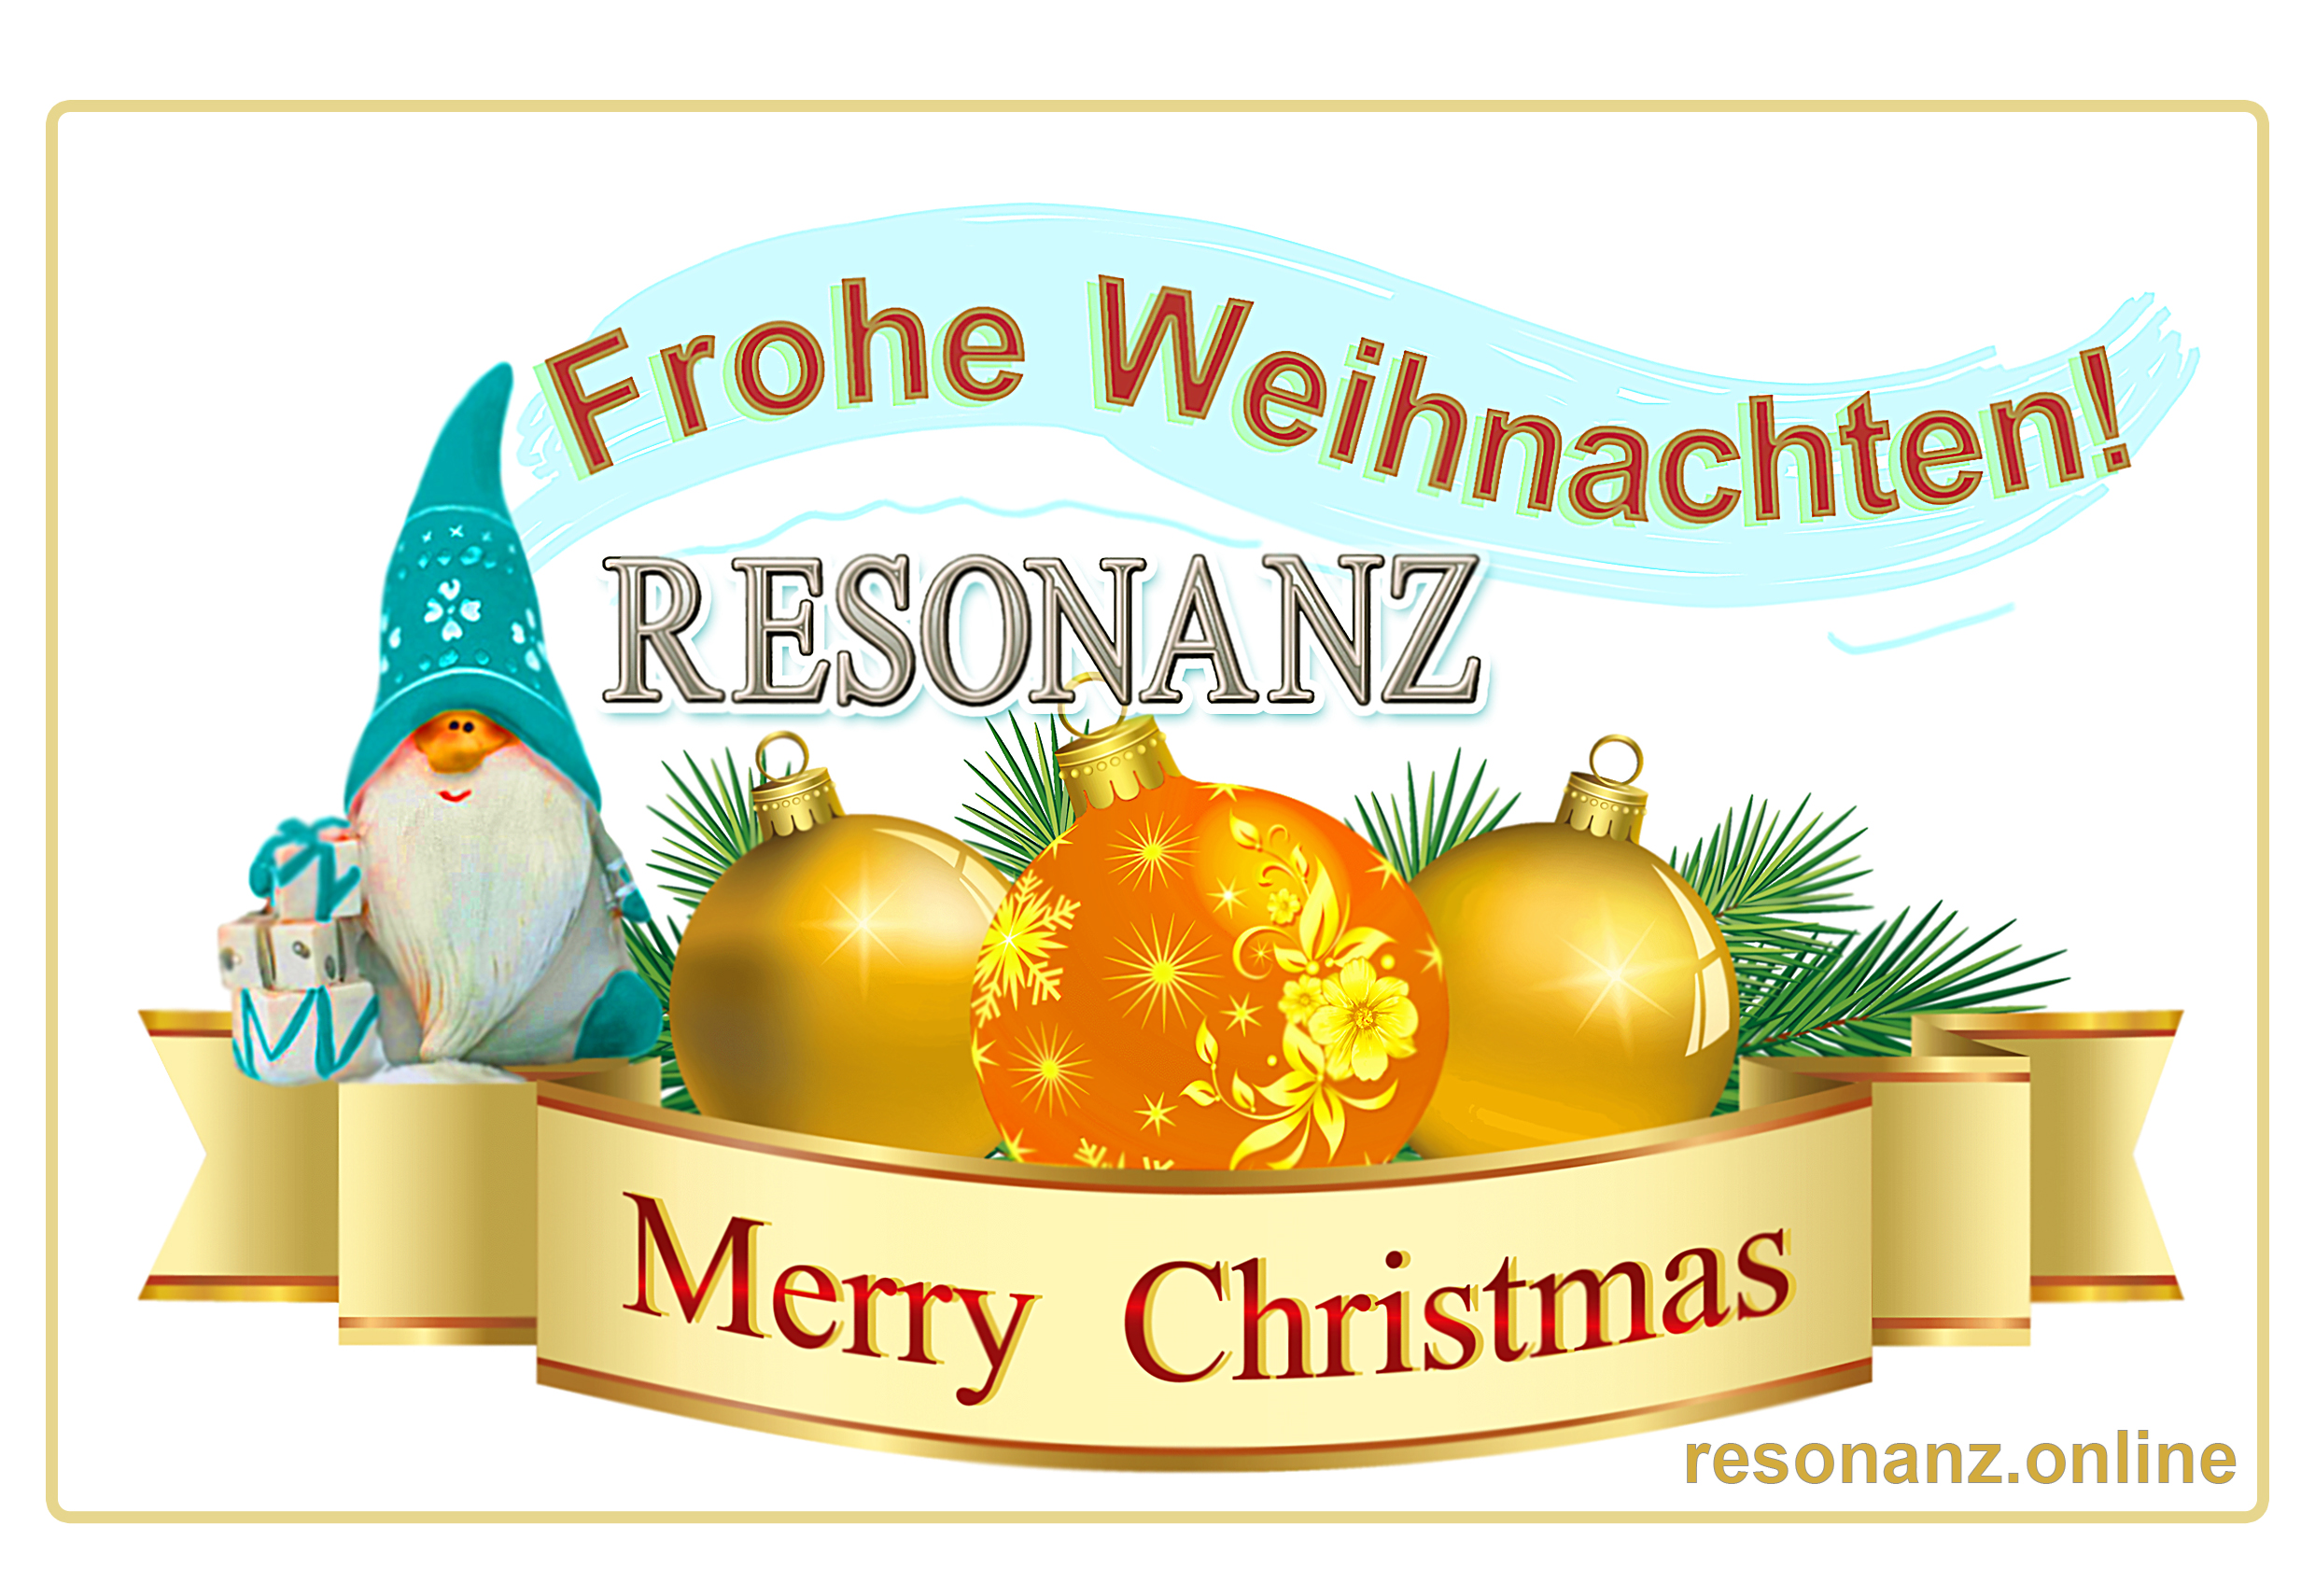 Die RESONANZ-Redaktion wünscht frohe Weihnachten und einen guten Rutsch in ein gesundes und friedliches 2023